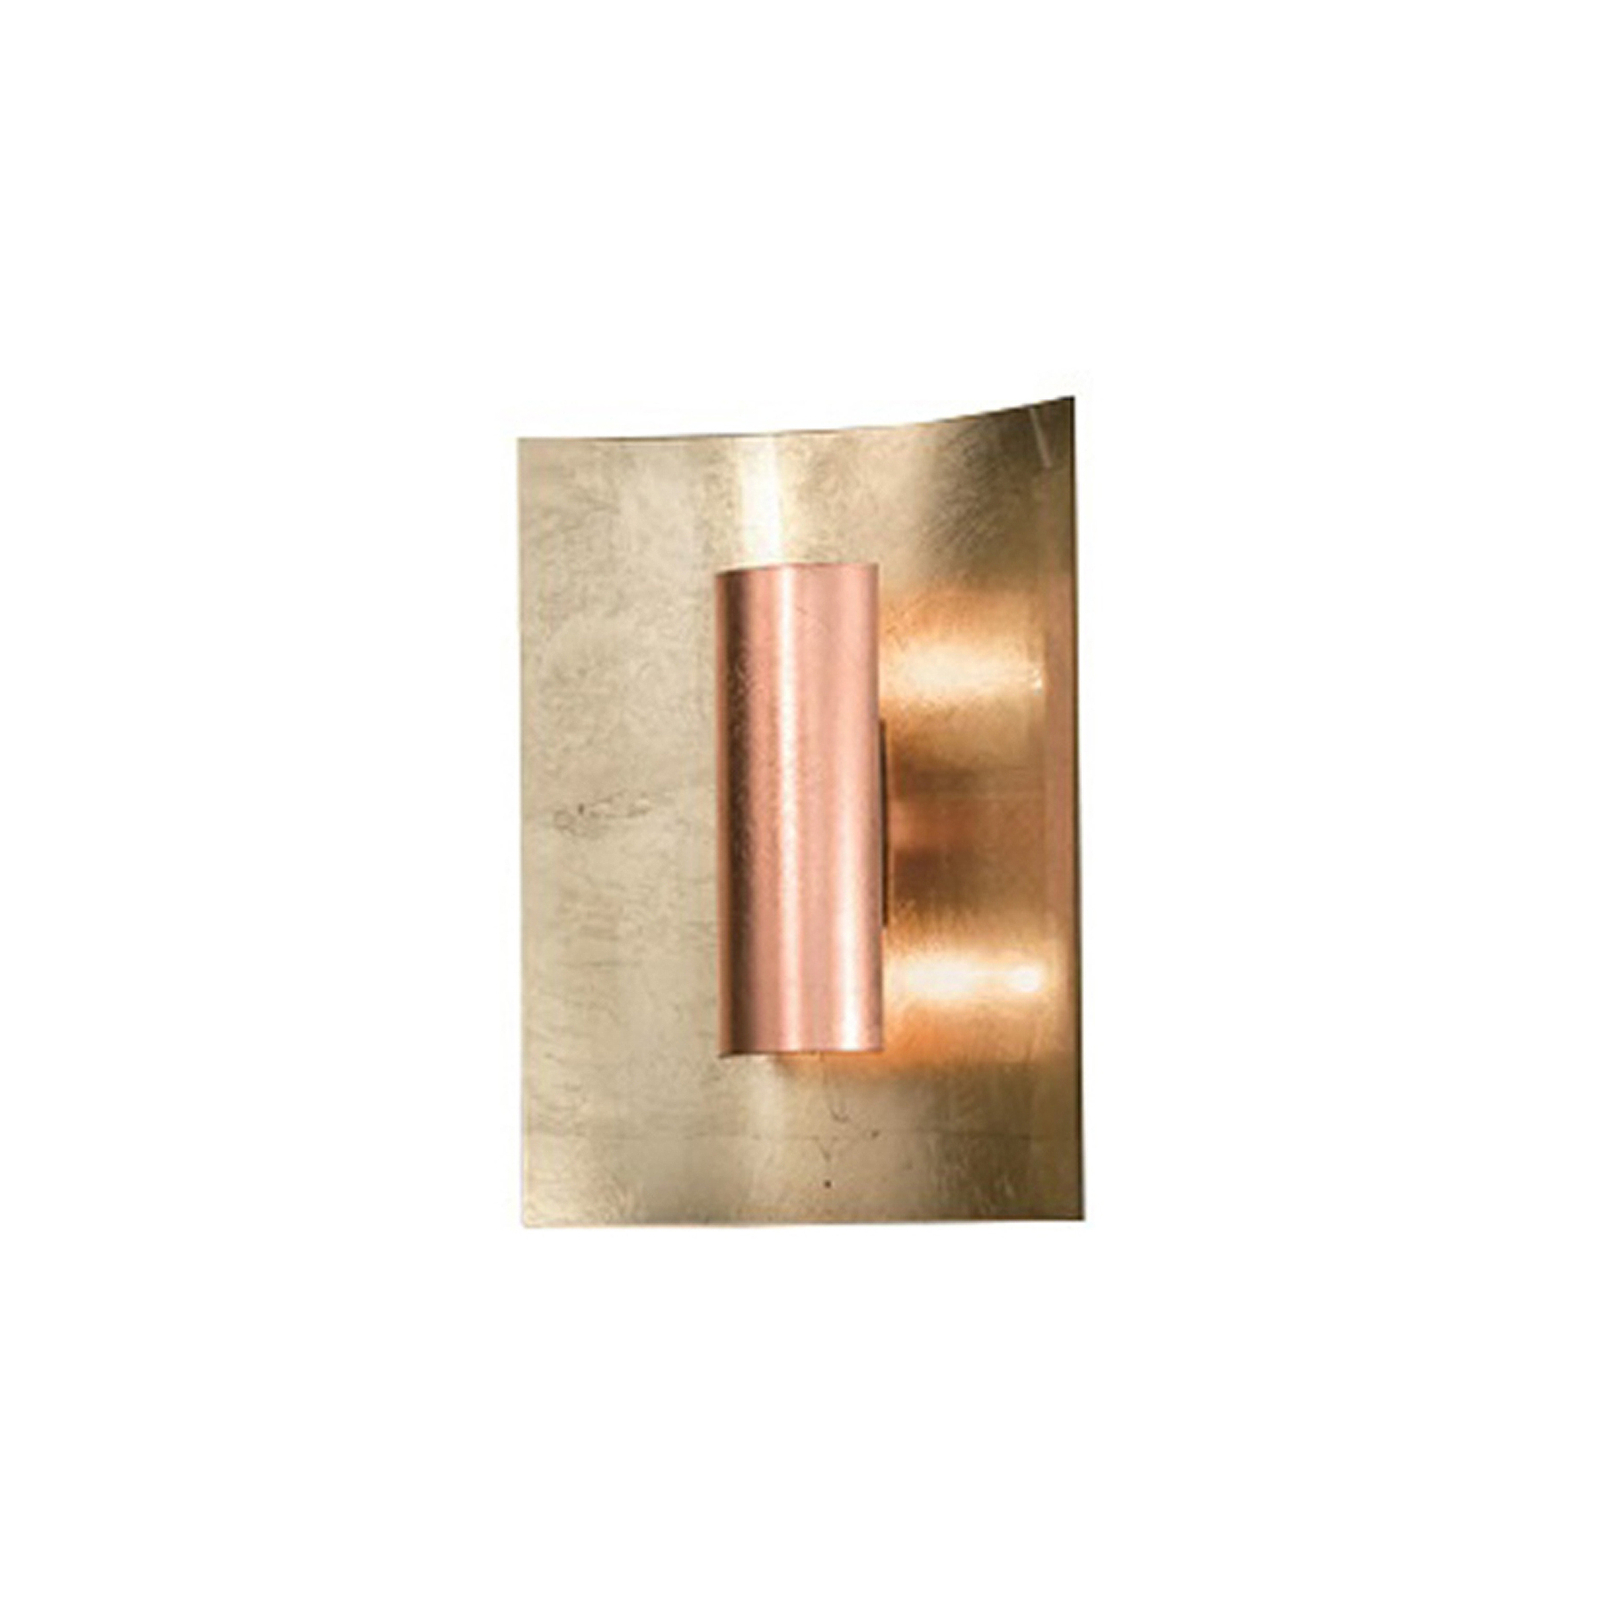 Aura Gold wall light copper shade, height 60 cm